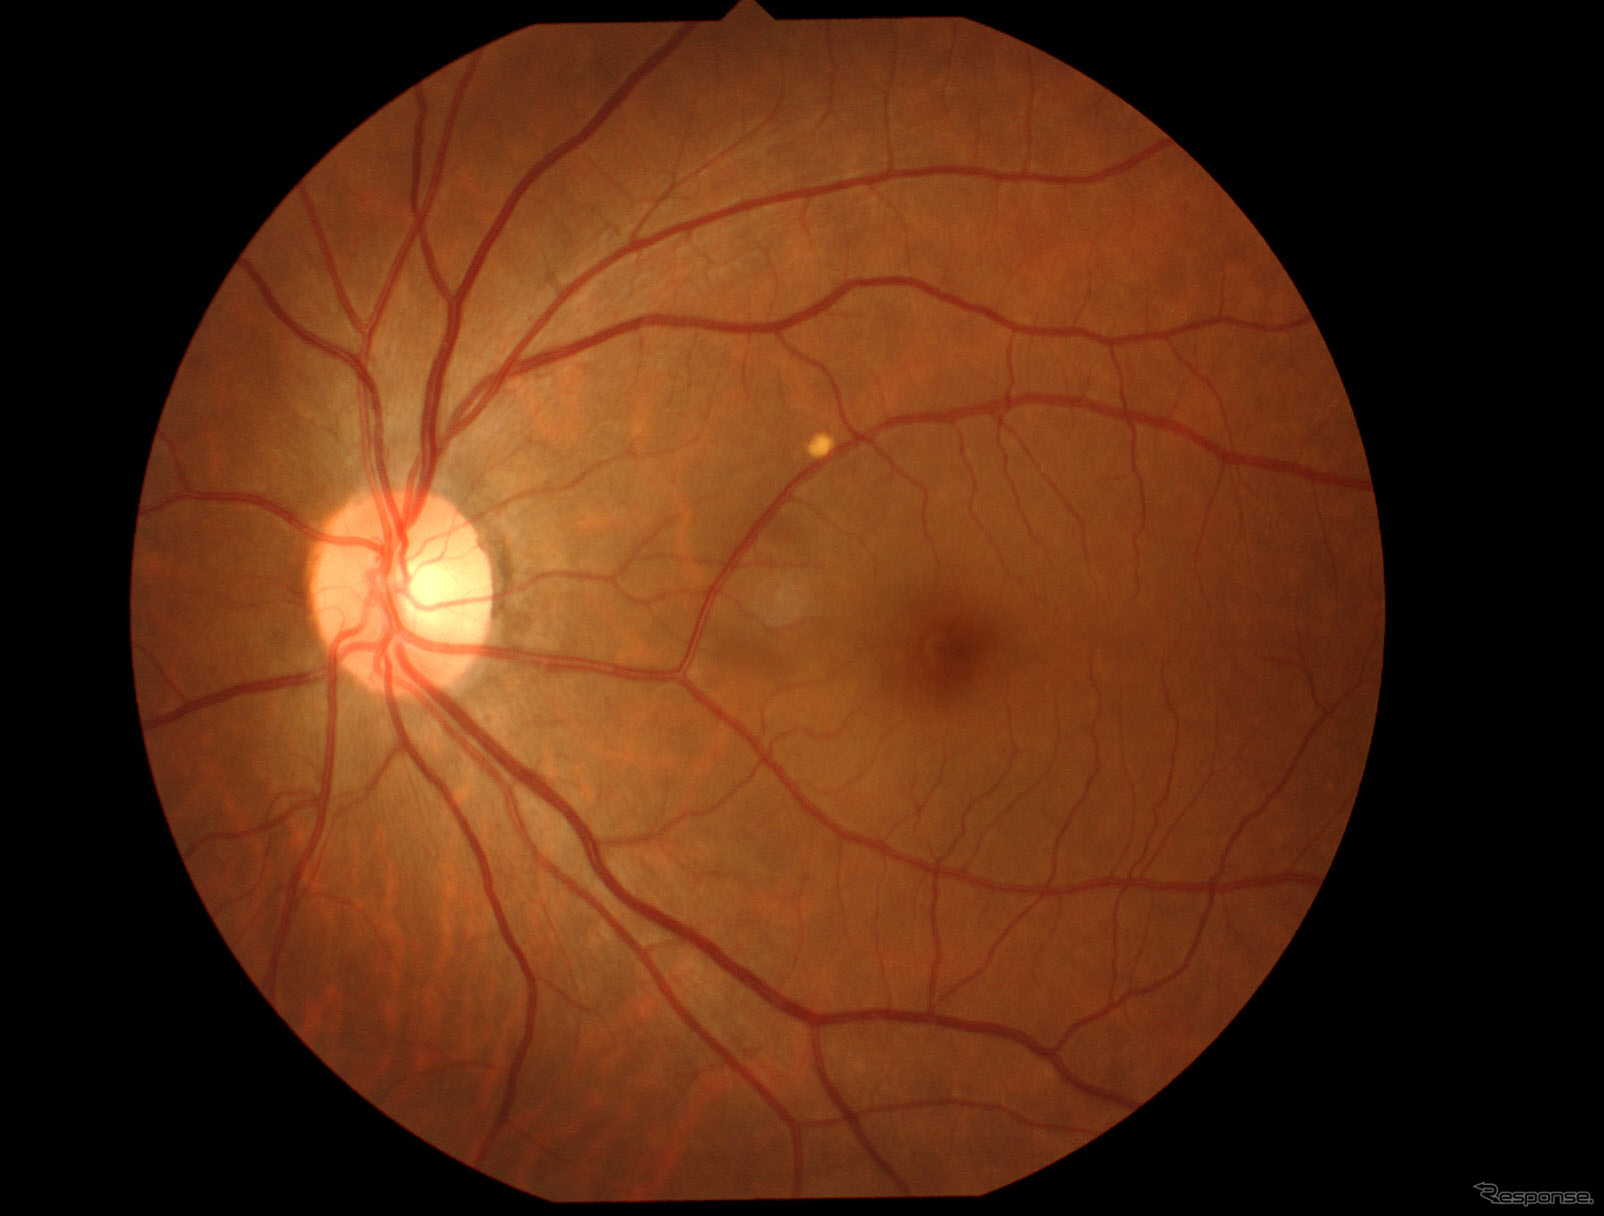 検査したときに撮影した私の左目の眼底写真。緑内障だとこの写真で神経の異常がわかる。